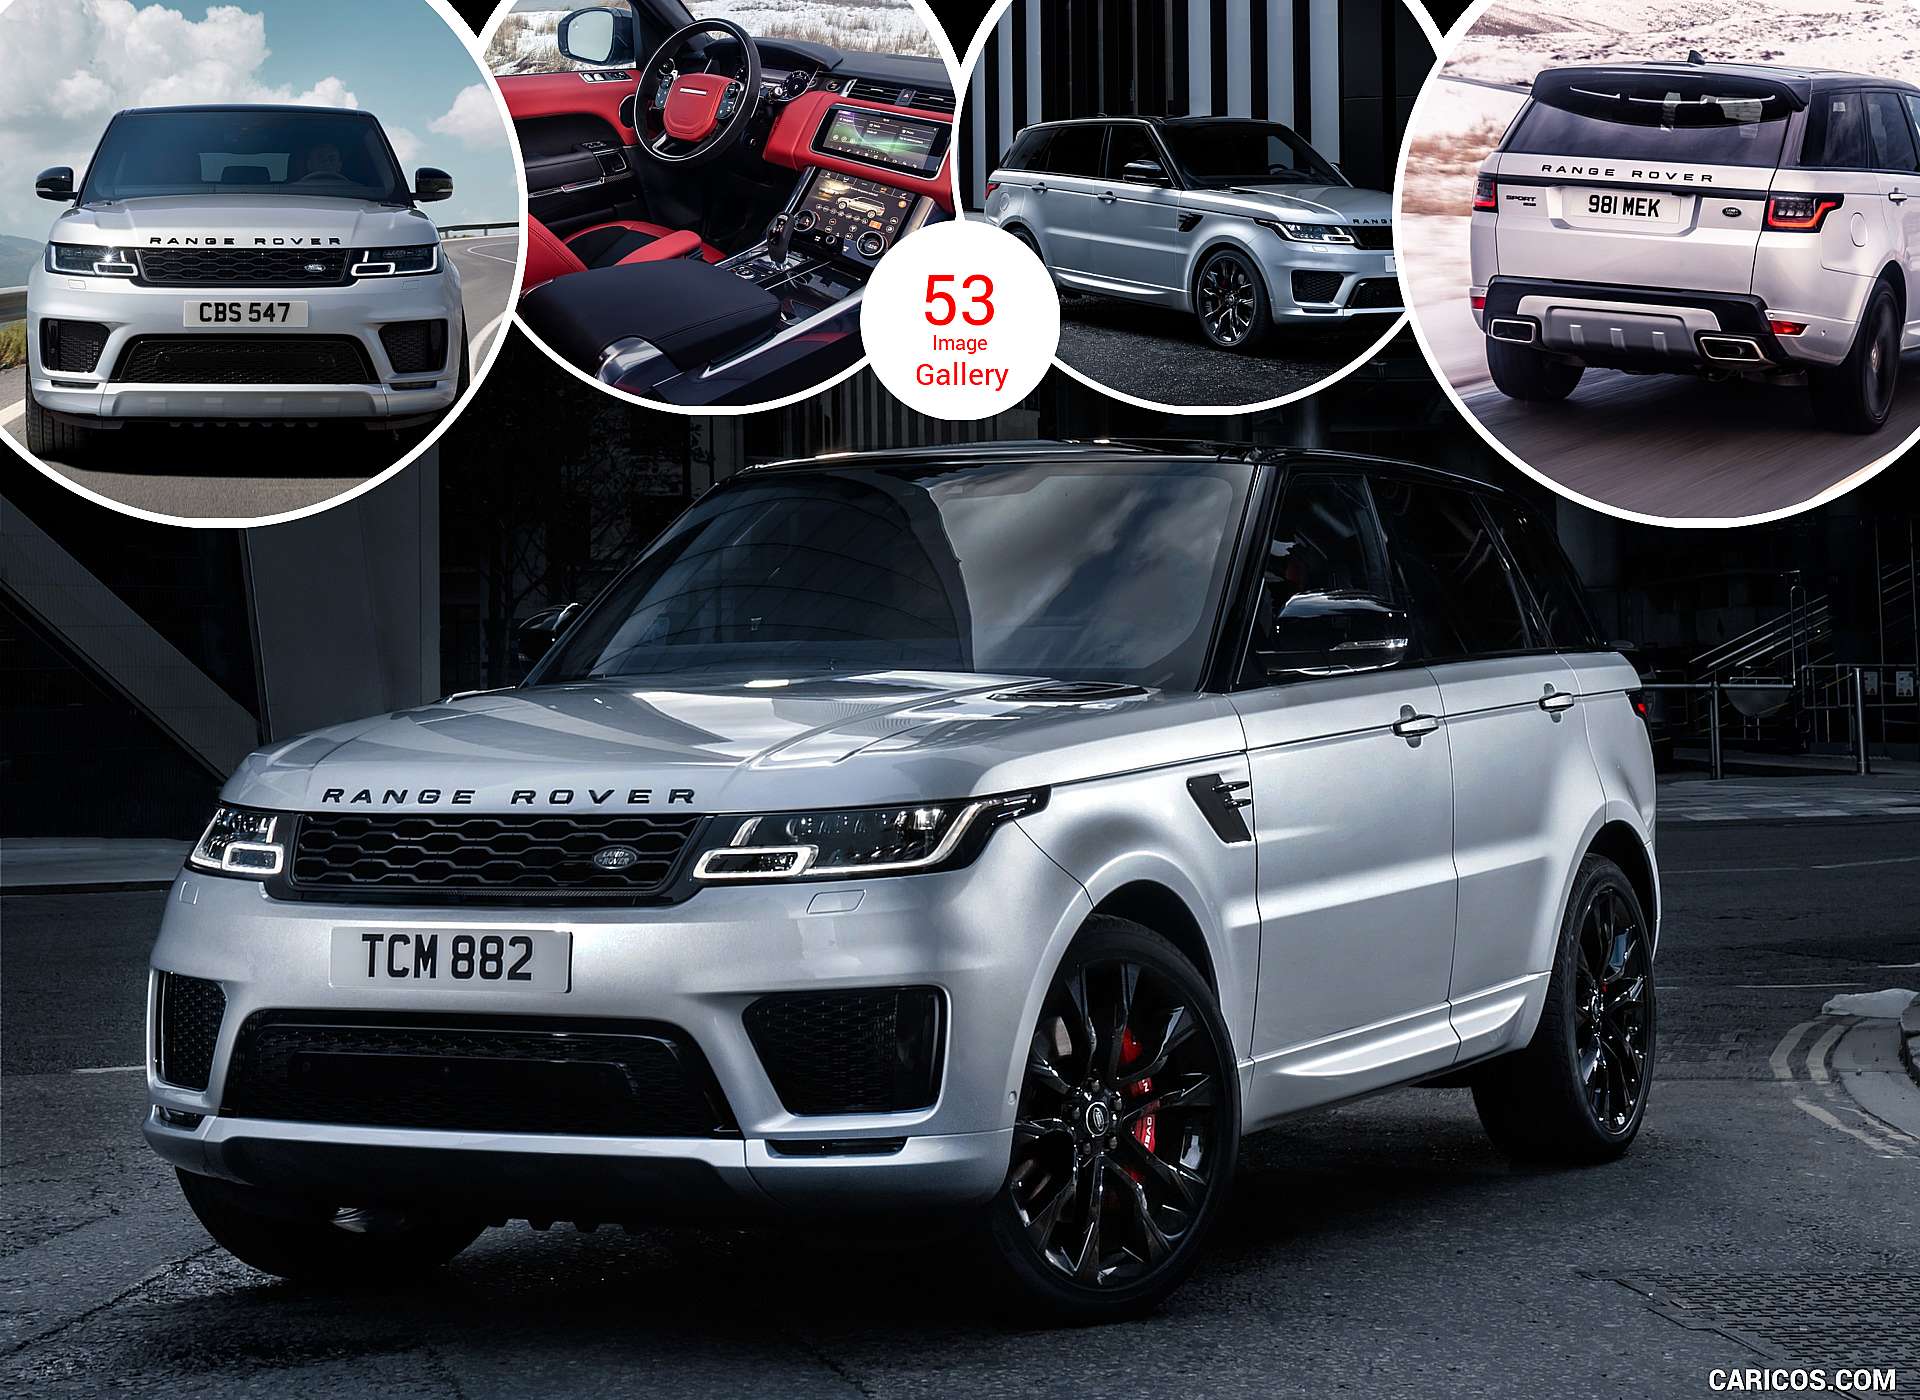 2020 Range Rover Sport Hst Special Edition Caricos Com